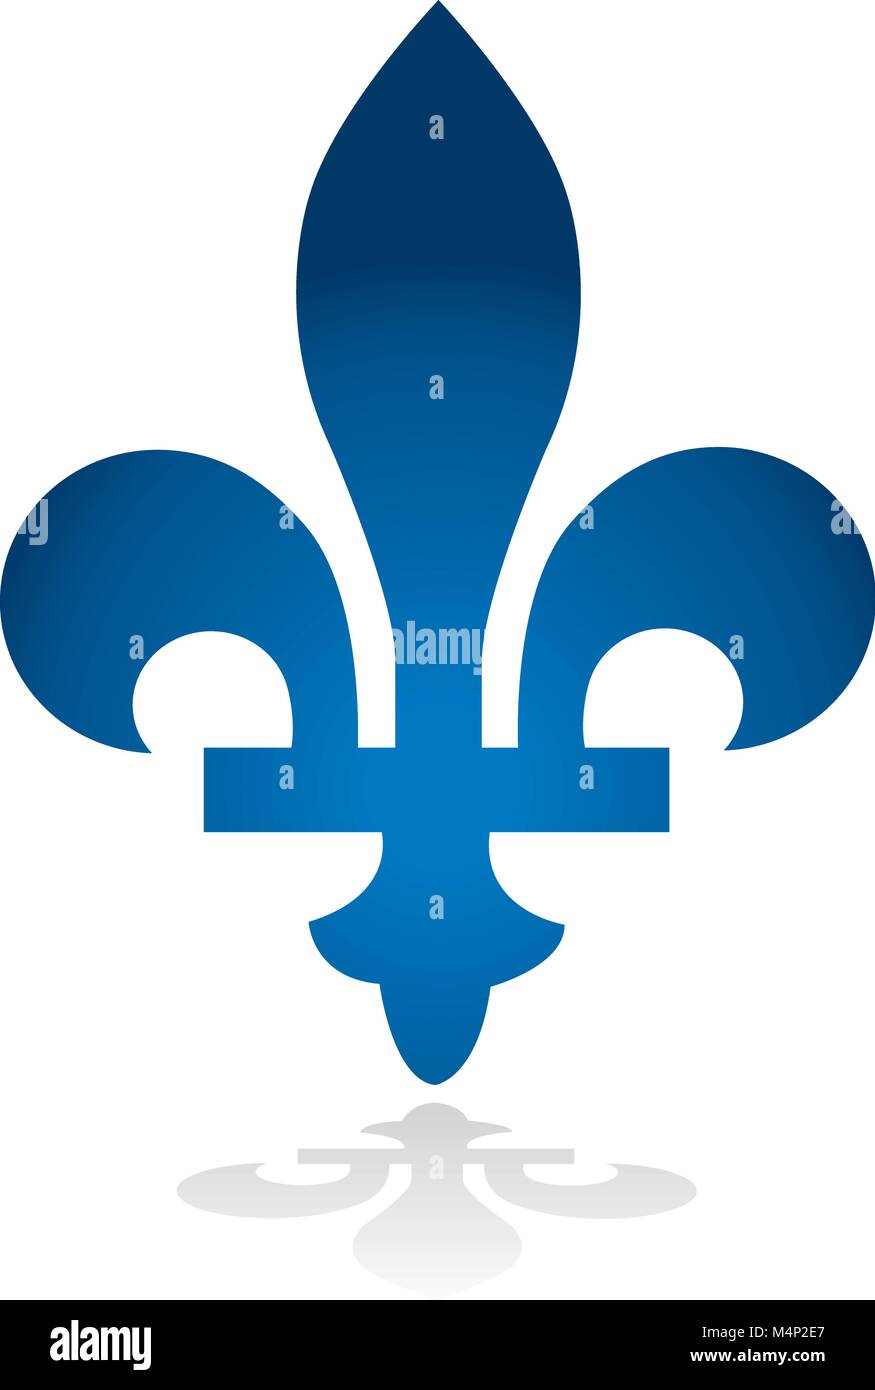 Quebec province of Canada emblem fleur de lys symbol vector Stock Vector